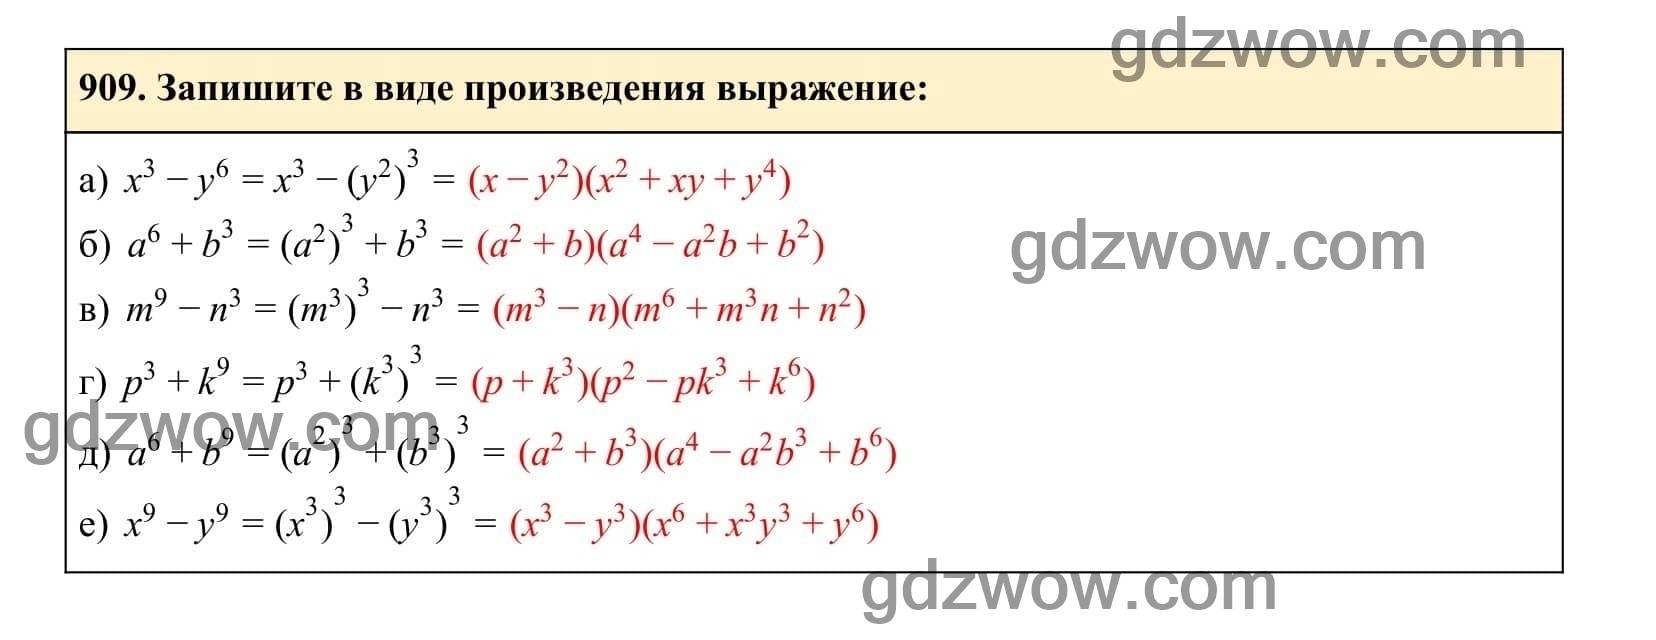 Упражнение 909 - ГДЗ по Алгебре 7 класс Учебник Макарычев (решебник) - GDZwow